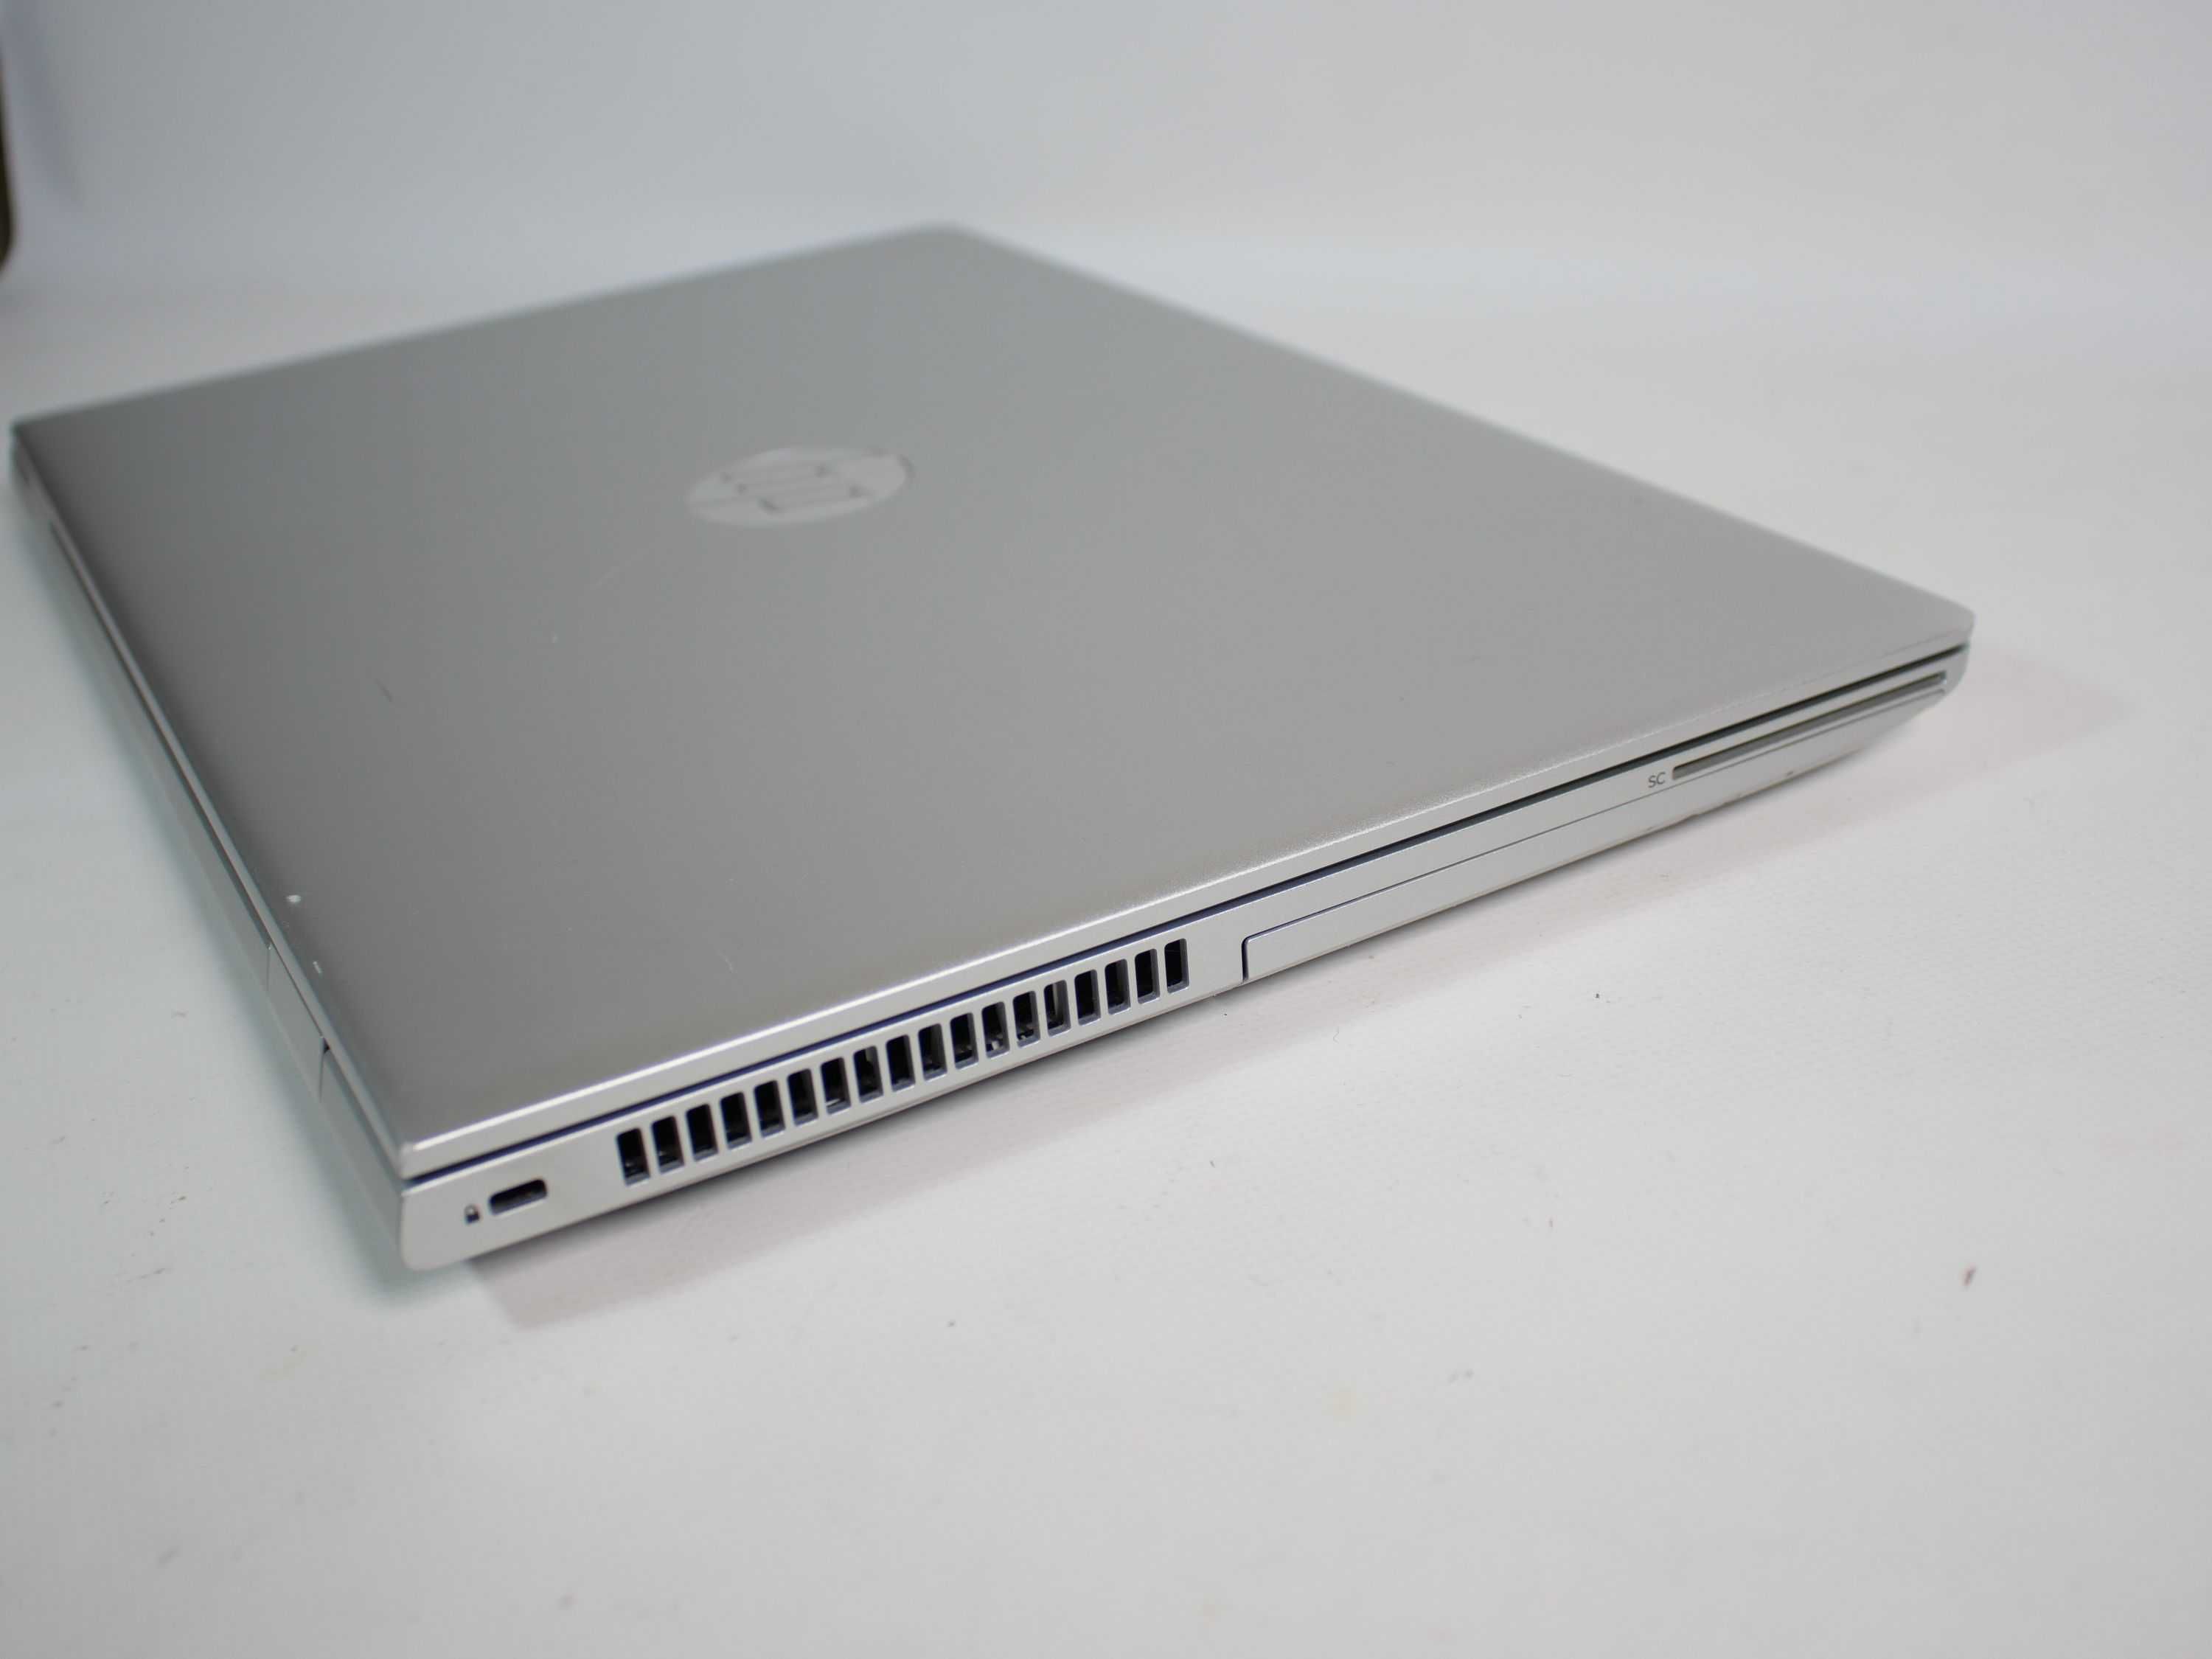 HP ProBook 650 G4 i7-8850H 6 ядер 15.6" Full HD IPS 16/500Gb COM порт!